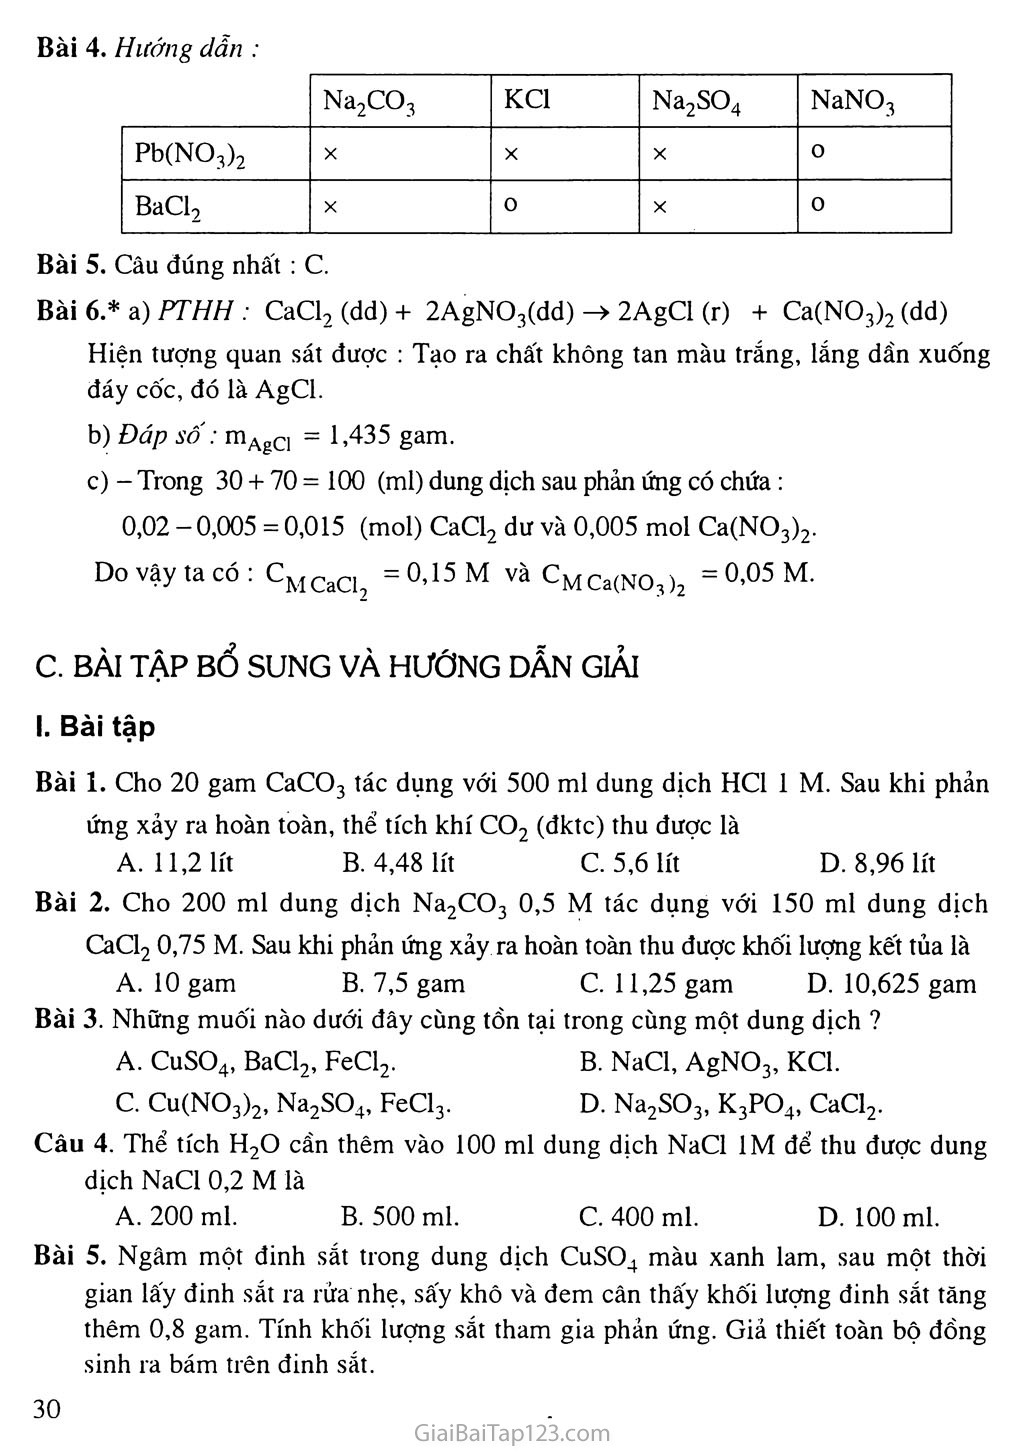 Bài 9: Tính chất hóa học của muối trang 2